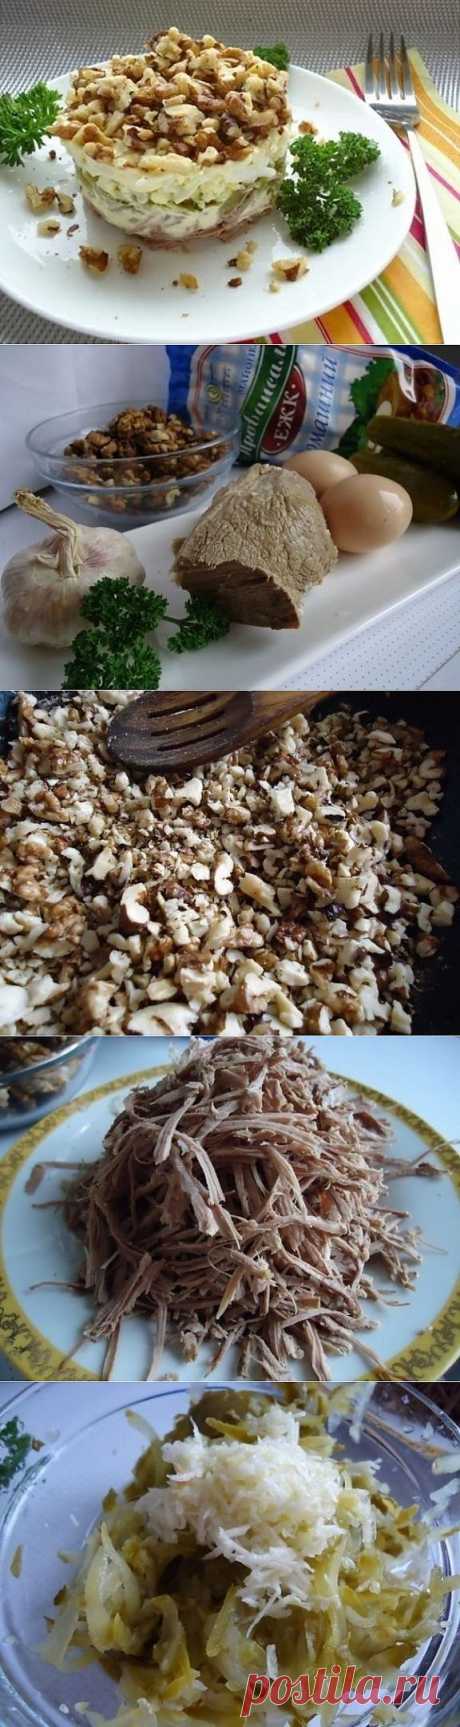 Как приготовить блюдо &quot;салат принц&quot; - рецепт, ингридиенты и фотографии | sloosh